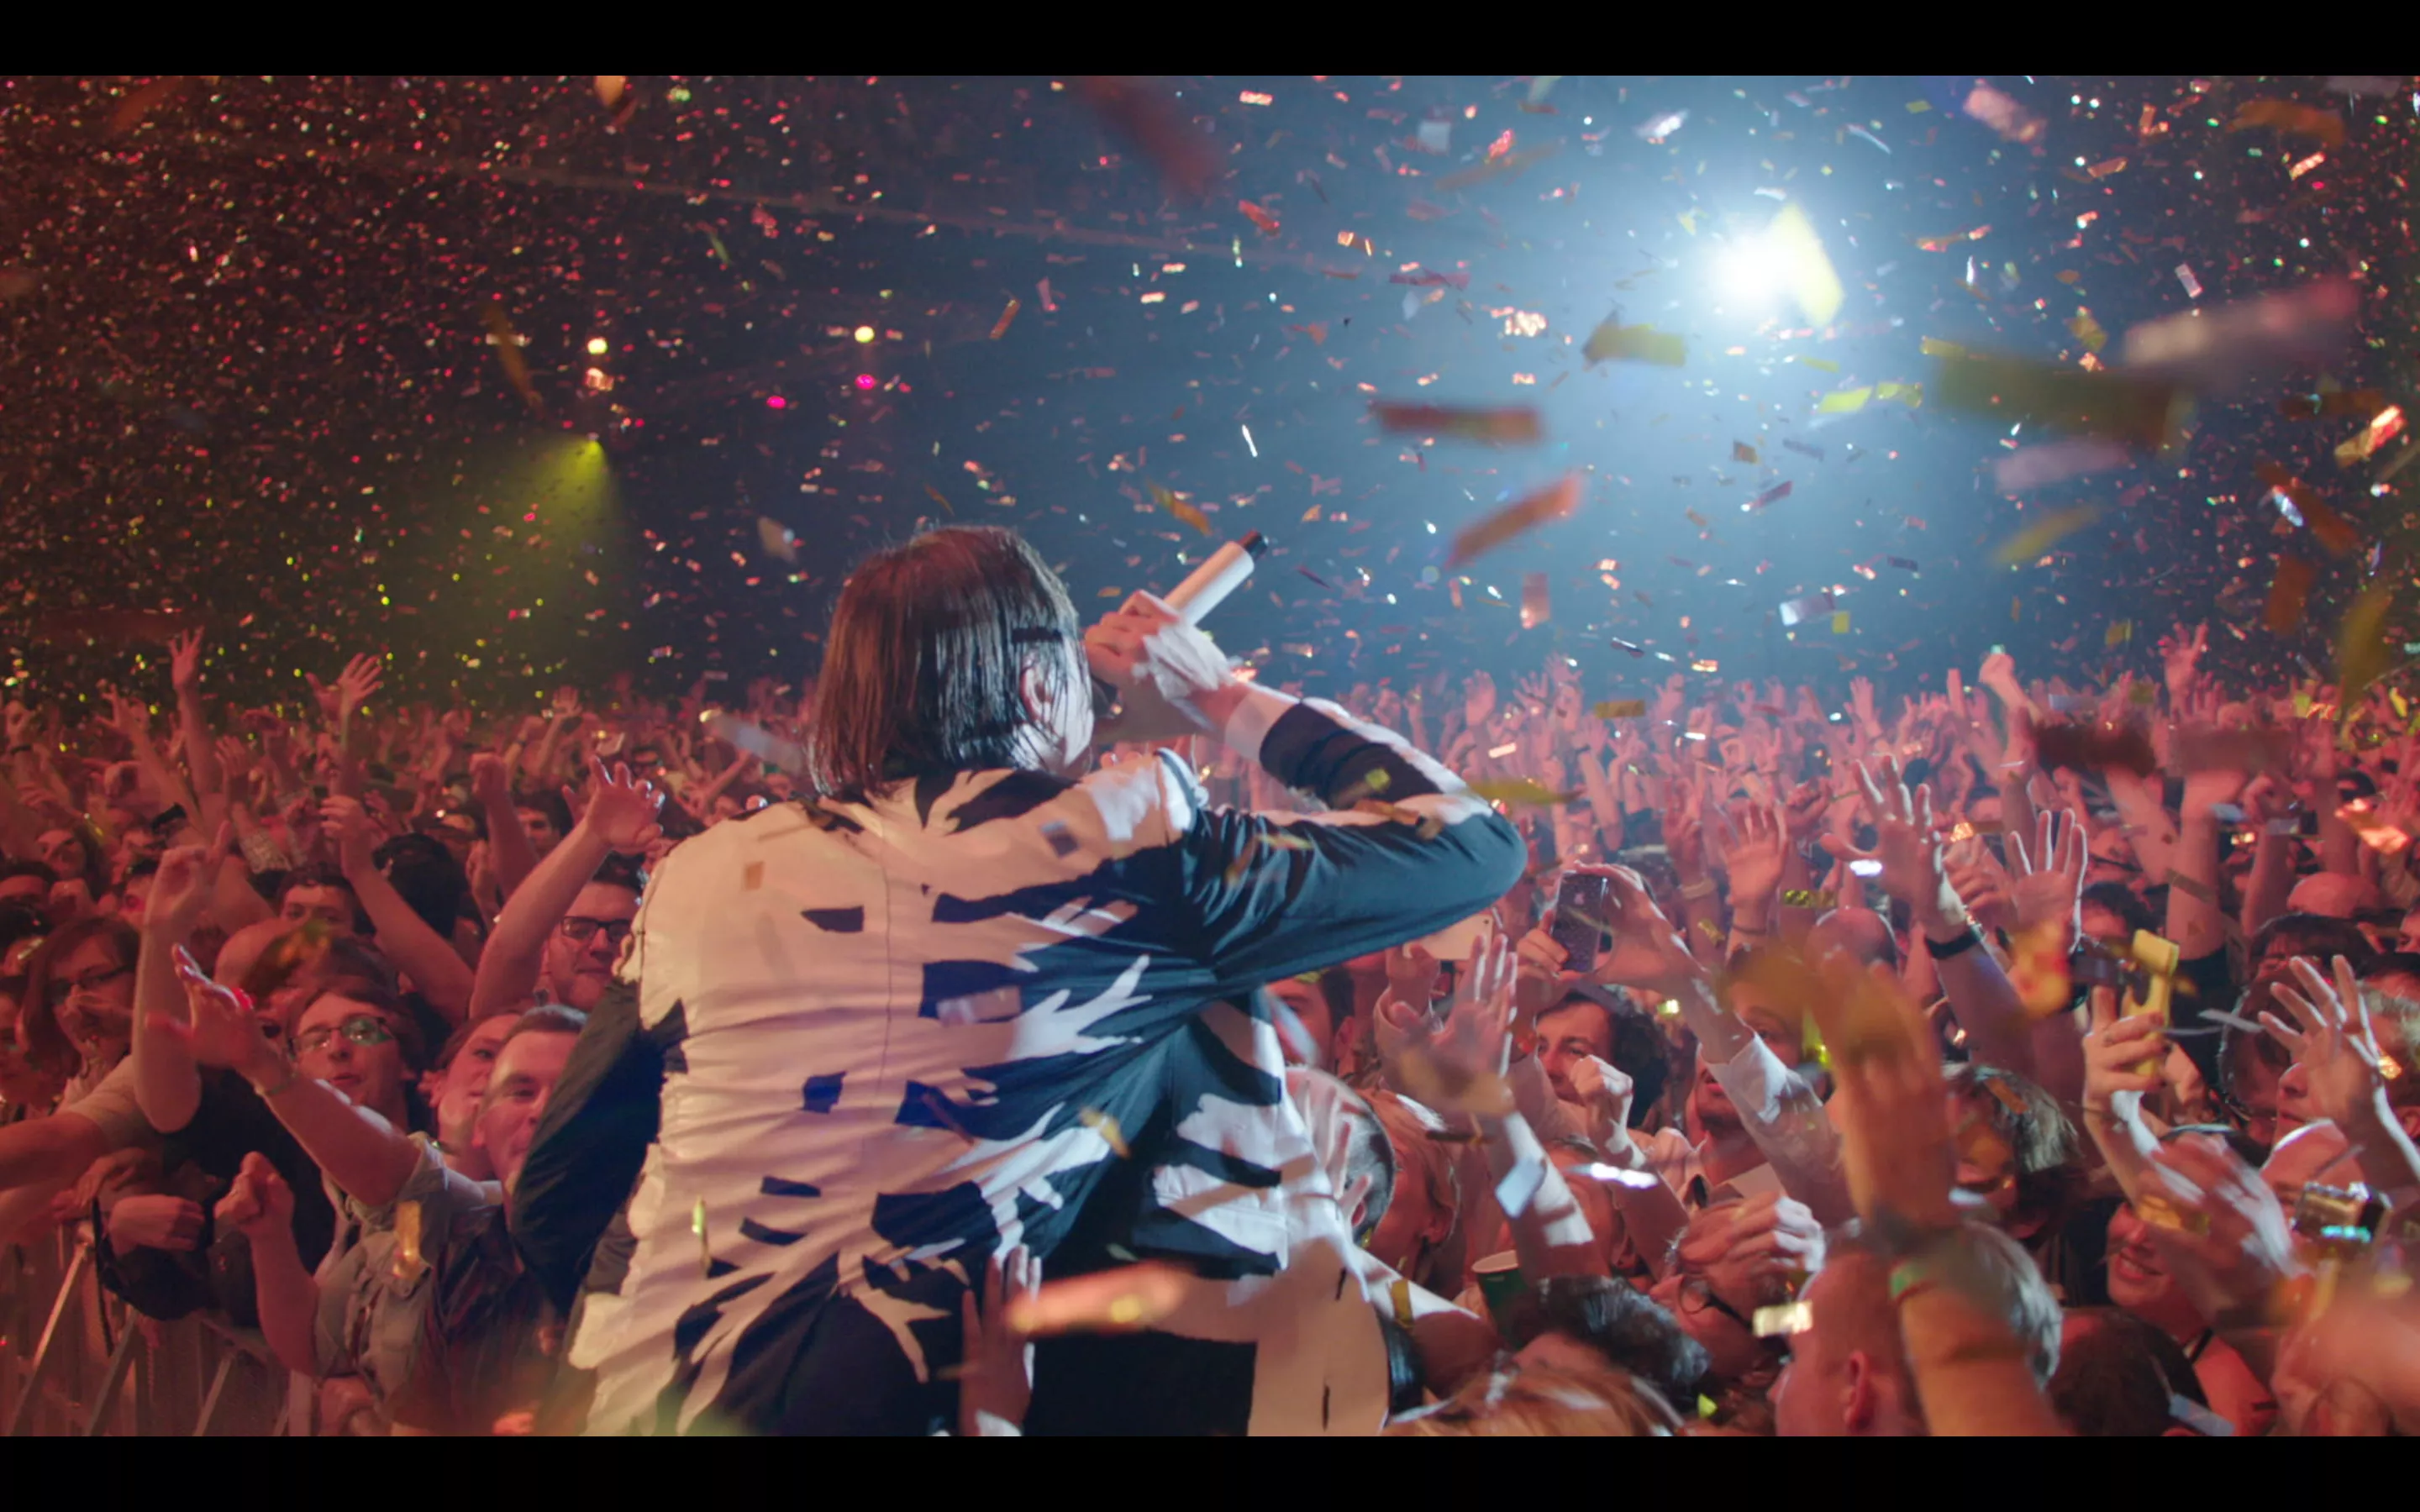 Arcade Fire-film er som en lang, poetisk musikvideo